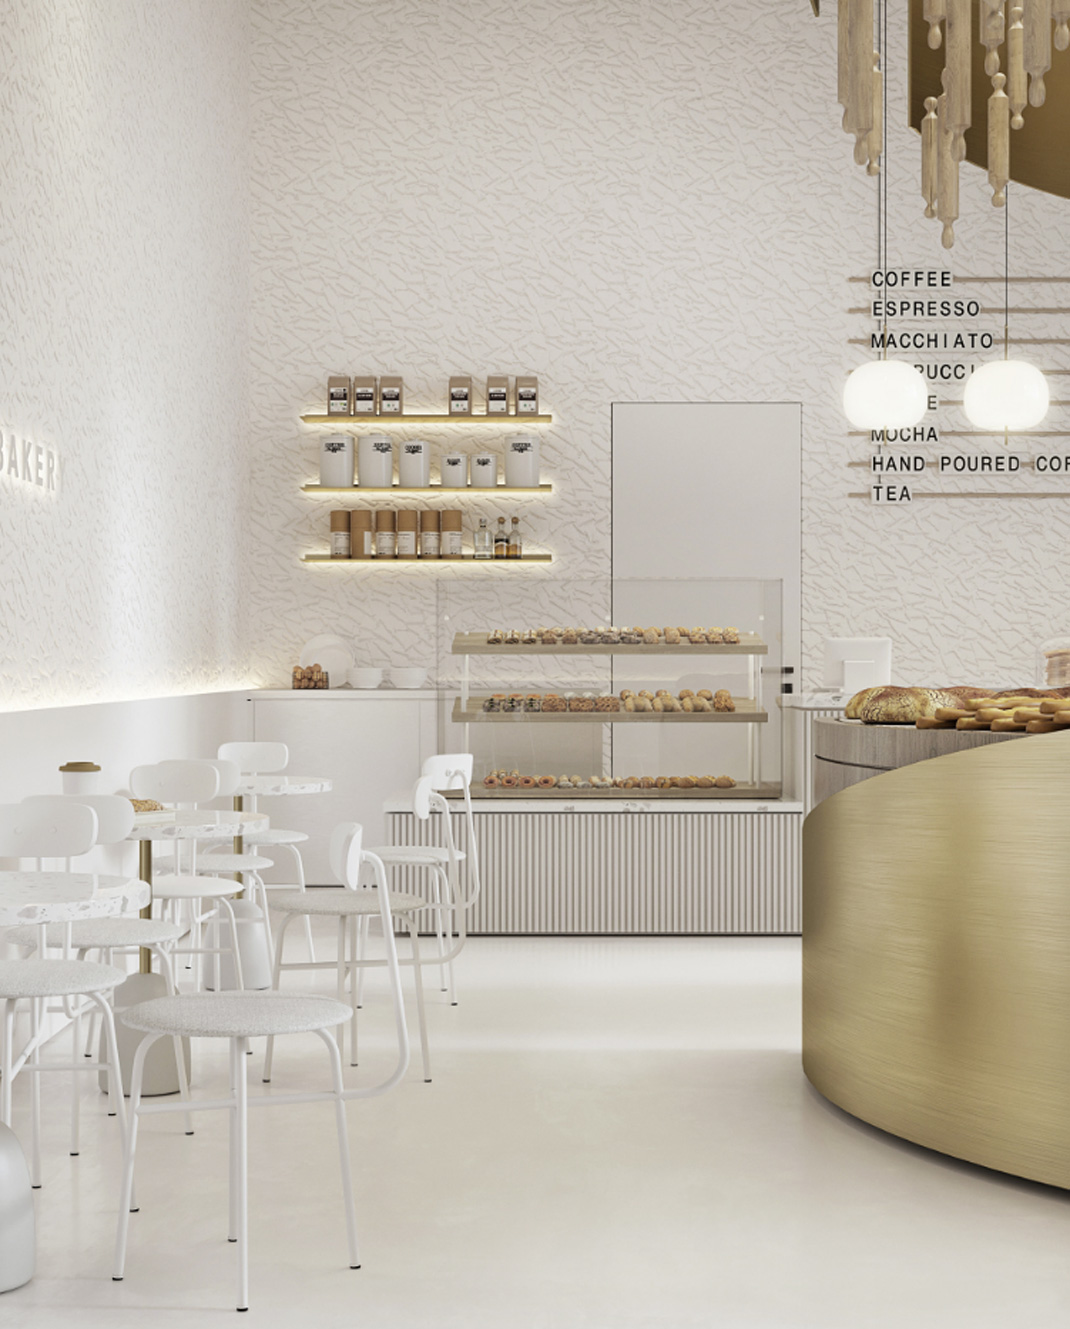 面包店TOL'KO 俄罗斯 面包店 极简主义 阵列 logo设计 vi设计 空间设计